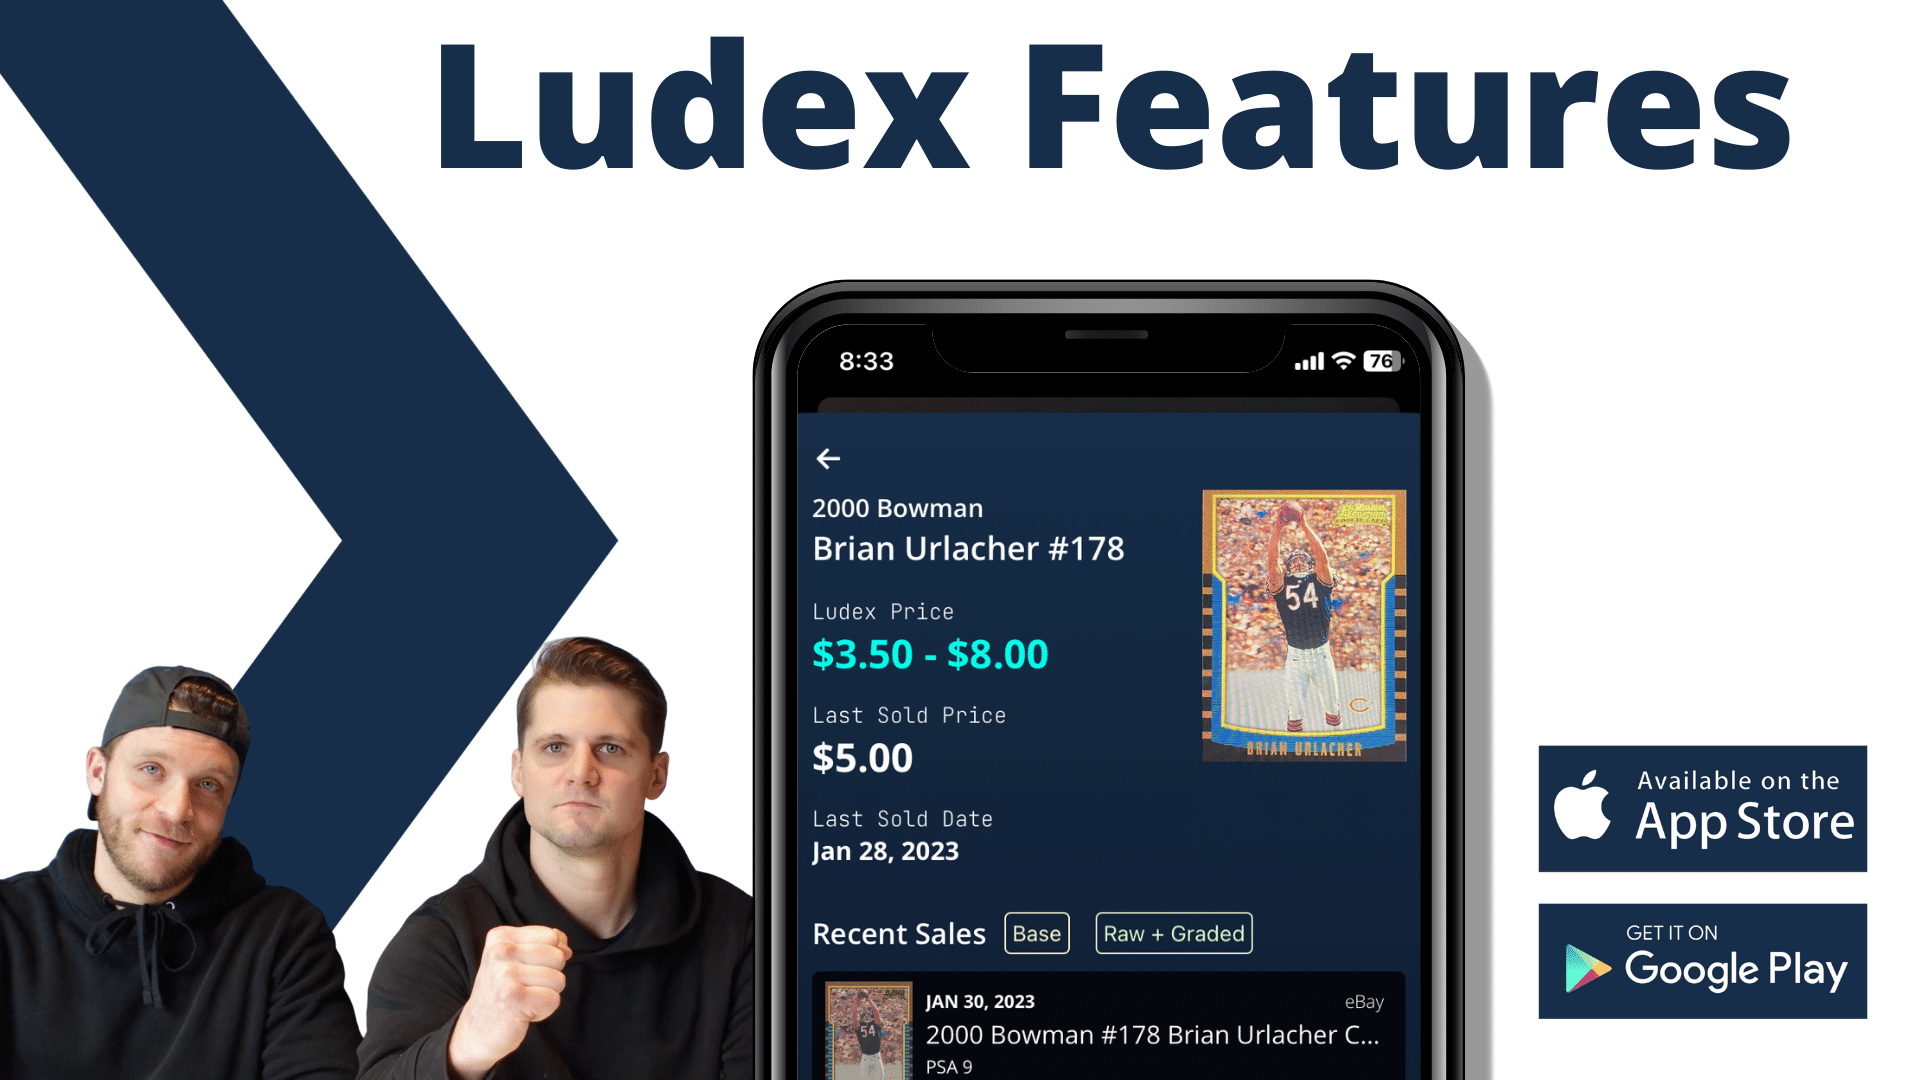 Ludex Features 101